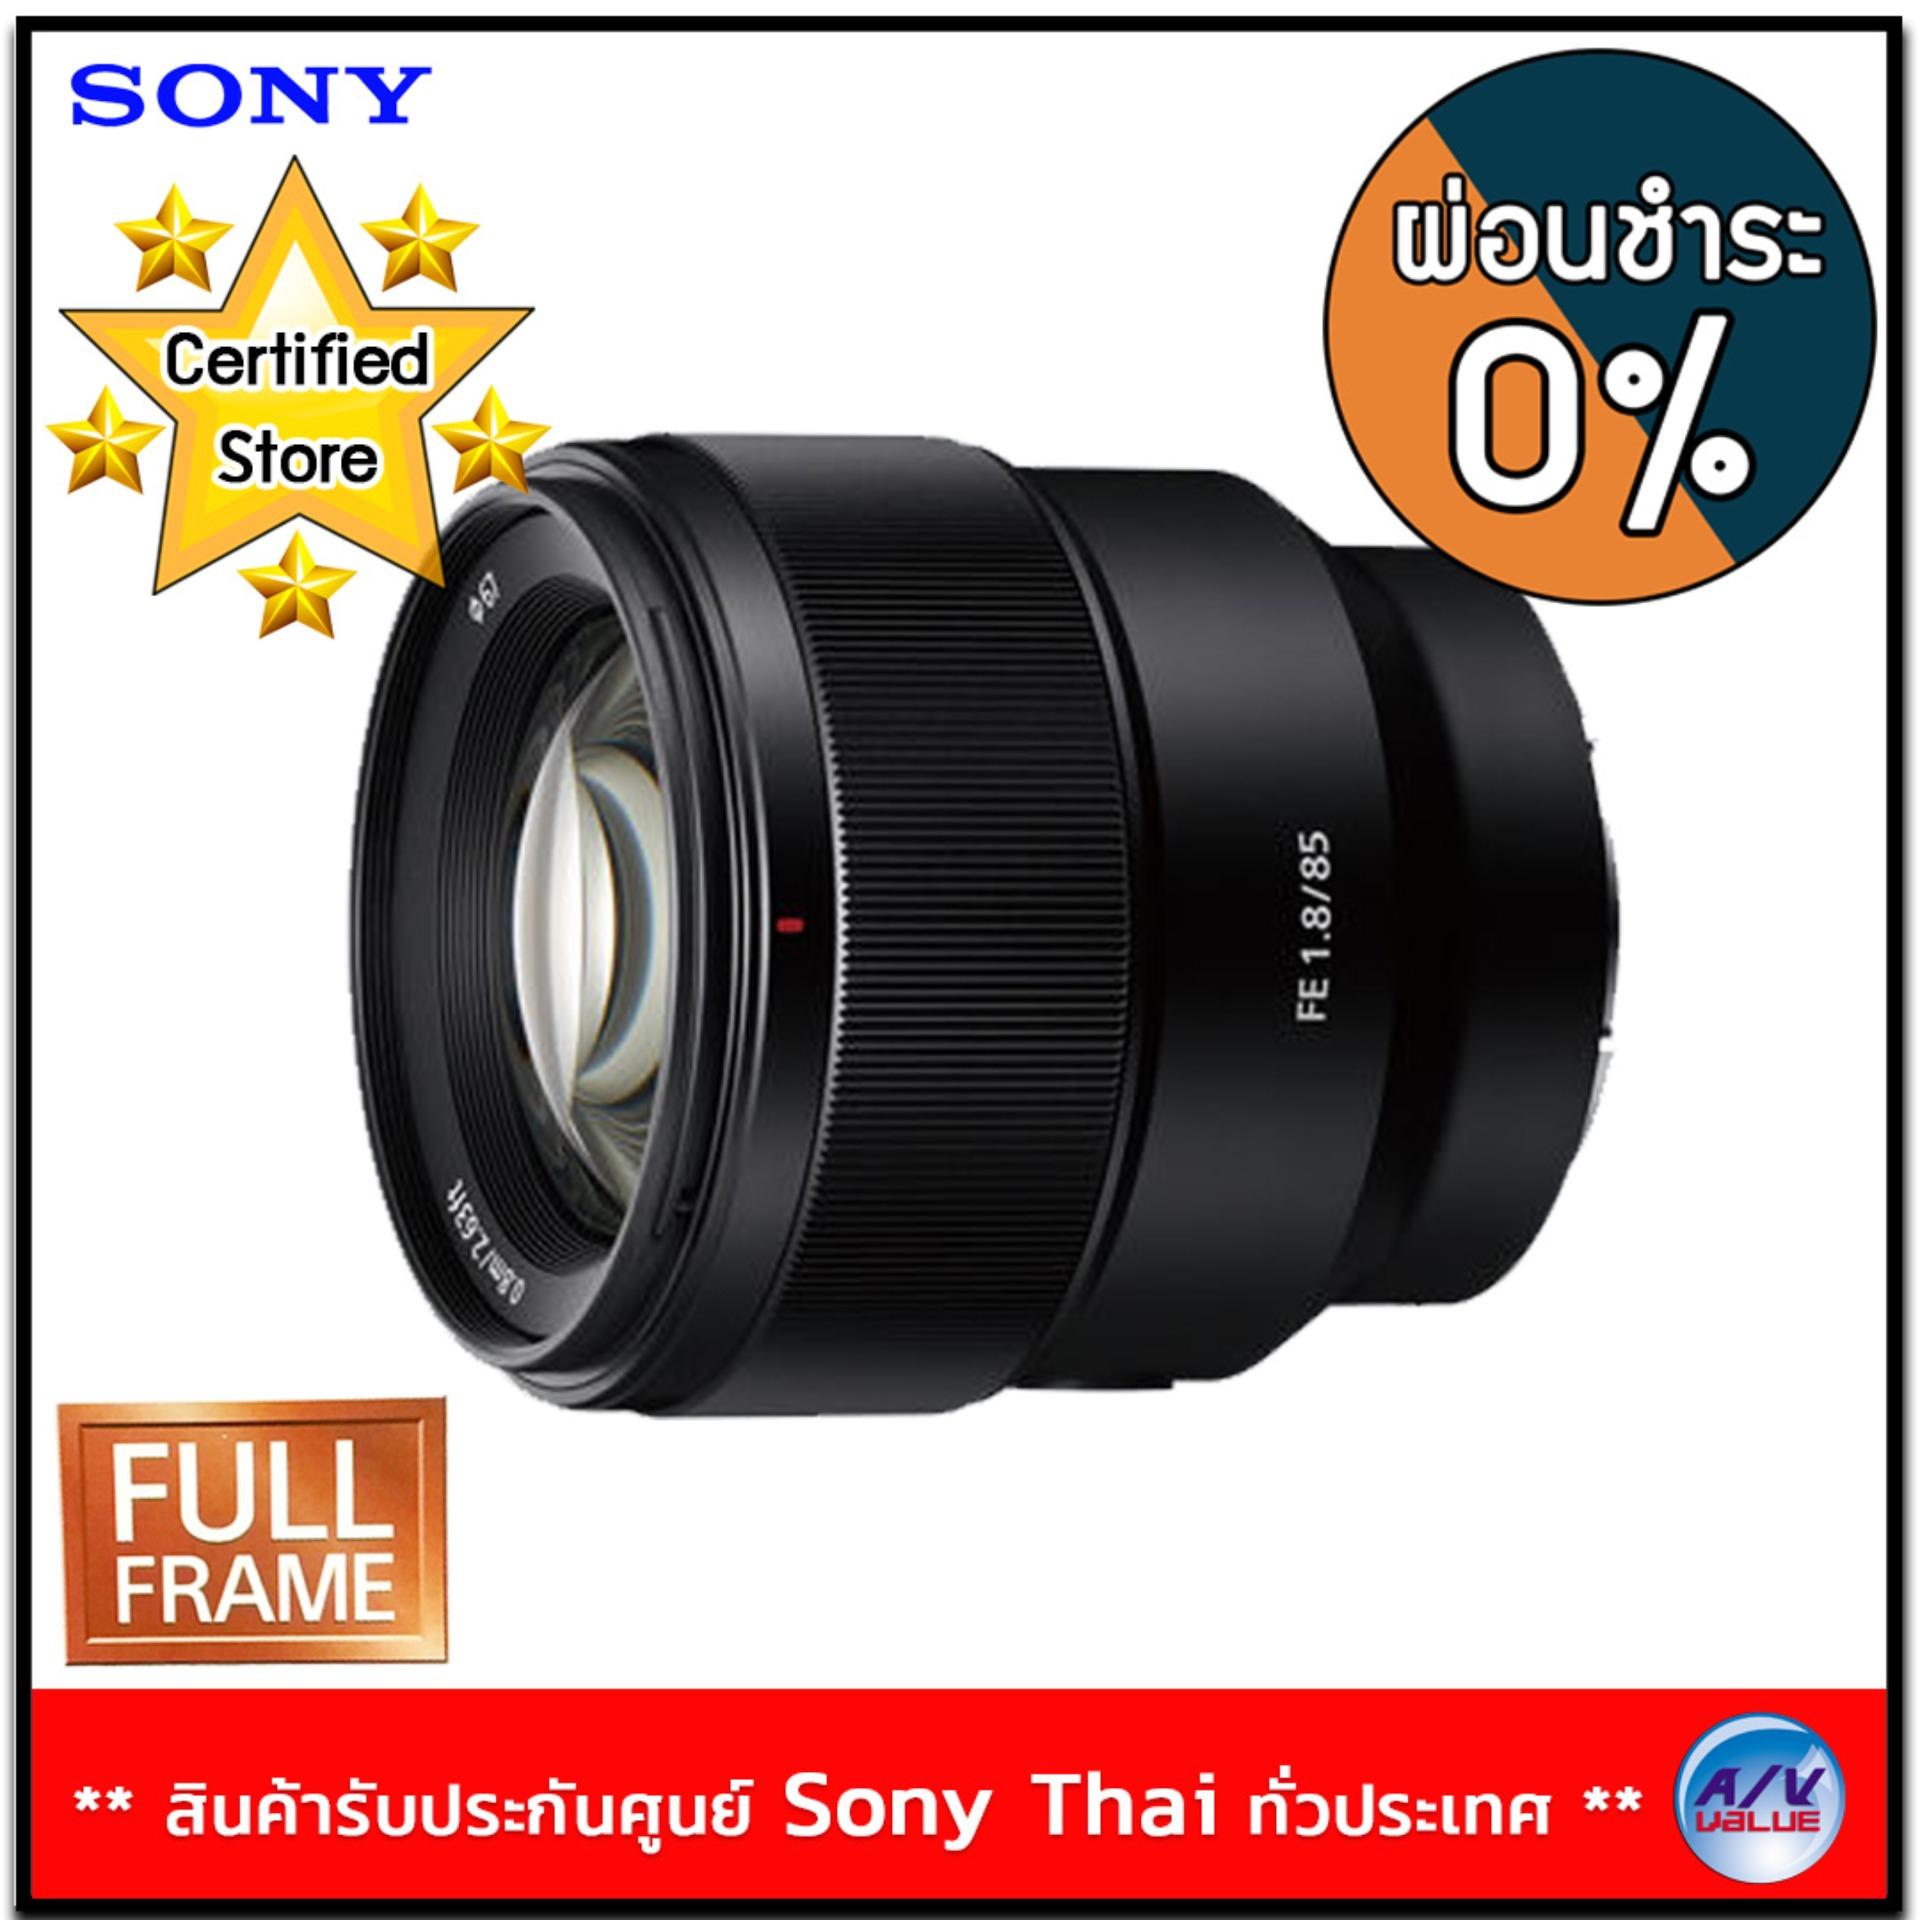 รีวิว Sony Lens รุ่น SEL85F18 (FE 85mm F1.8) ***0% 10 เดือน - Allen